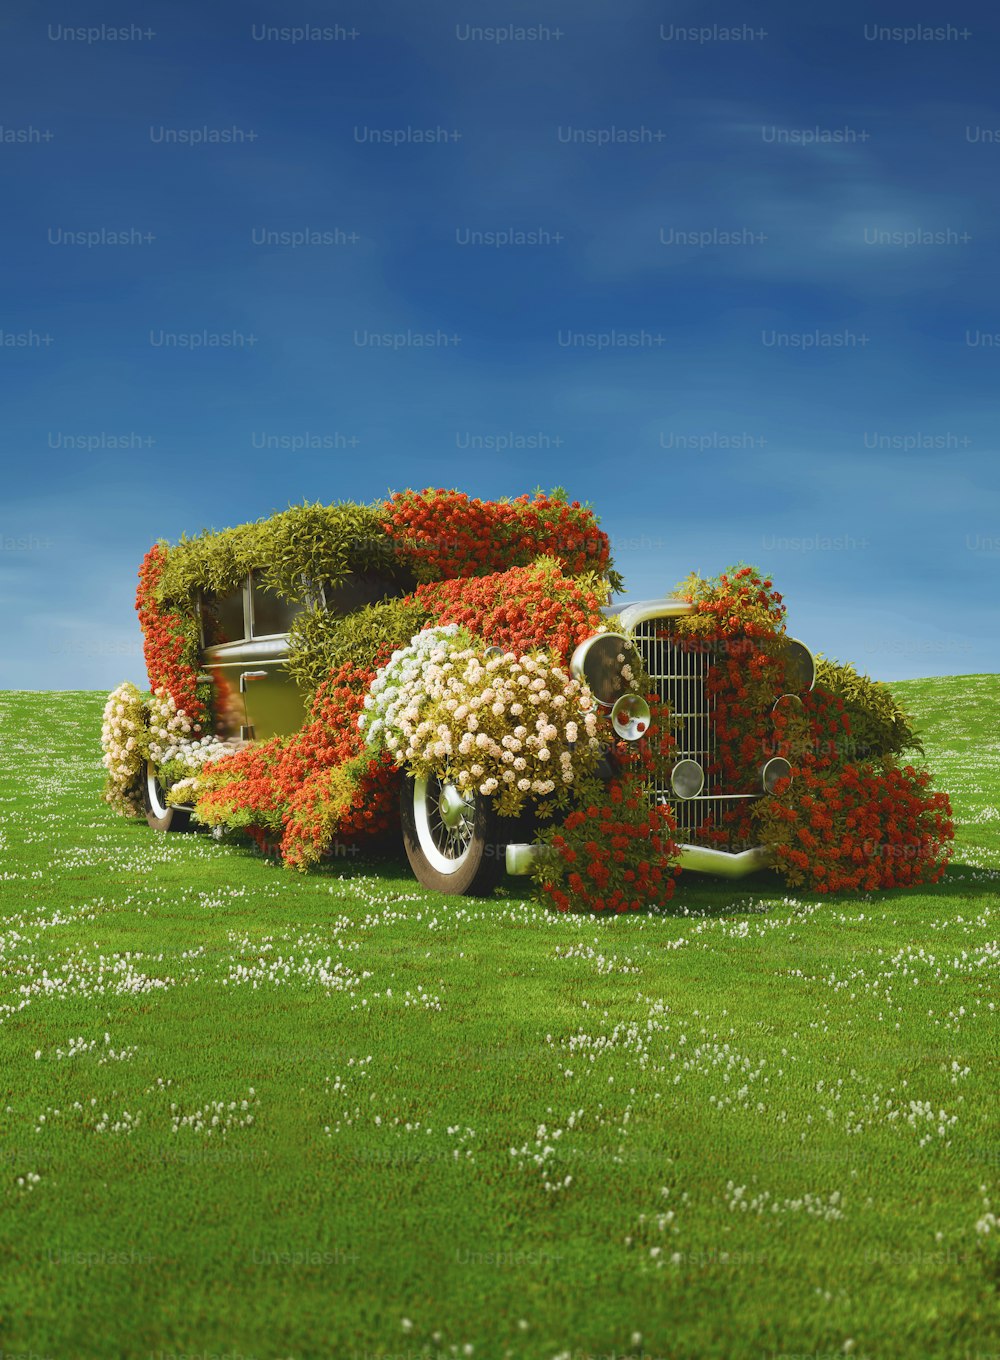 무성한 녹색 들판 위에 꽃으로 뒤덮인 �자동차